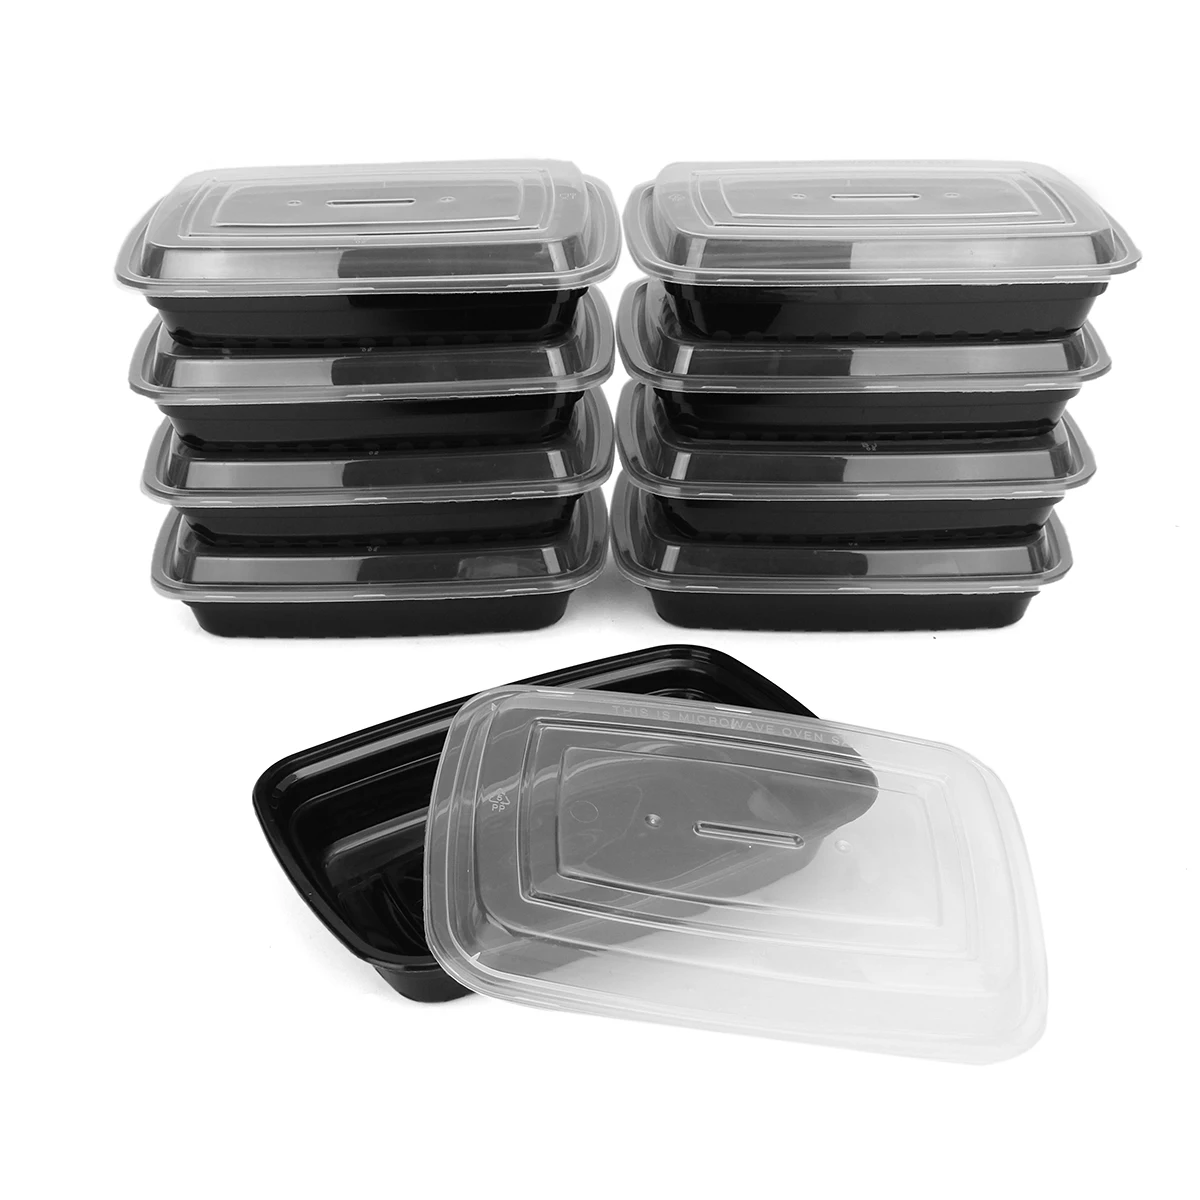 10 шт. микроволновая печь применимые Ланч-боксы Bento коробка еды контейнер для продуктов пластиковые Многоразовые продукты, фрукты коробка для хранения случае 750 мл